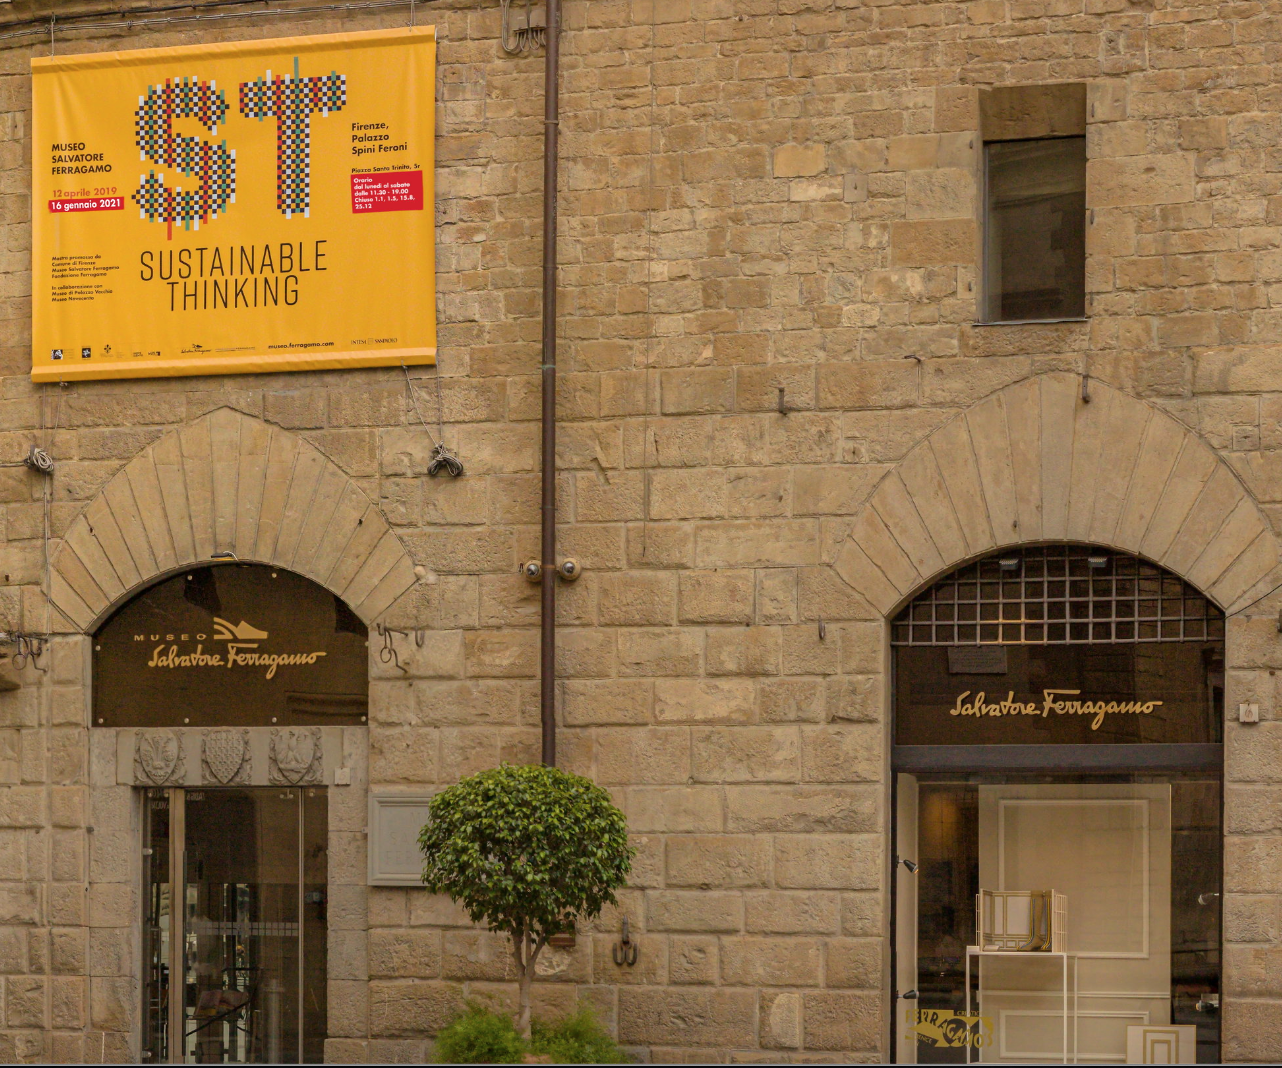 Fachada da loja e museu Salvatore Ferragamo no Palácio Spini Feroni em Florença (Fonte: Tour virtual museu Salvatore Ferragamo)